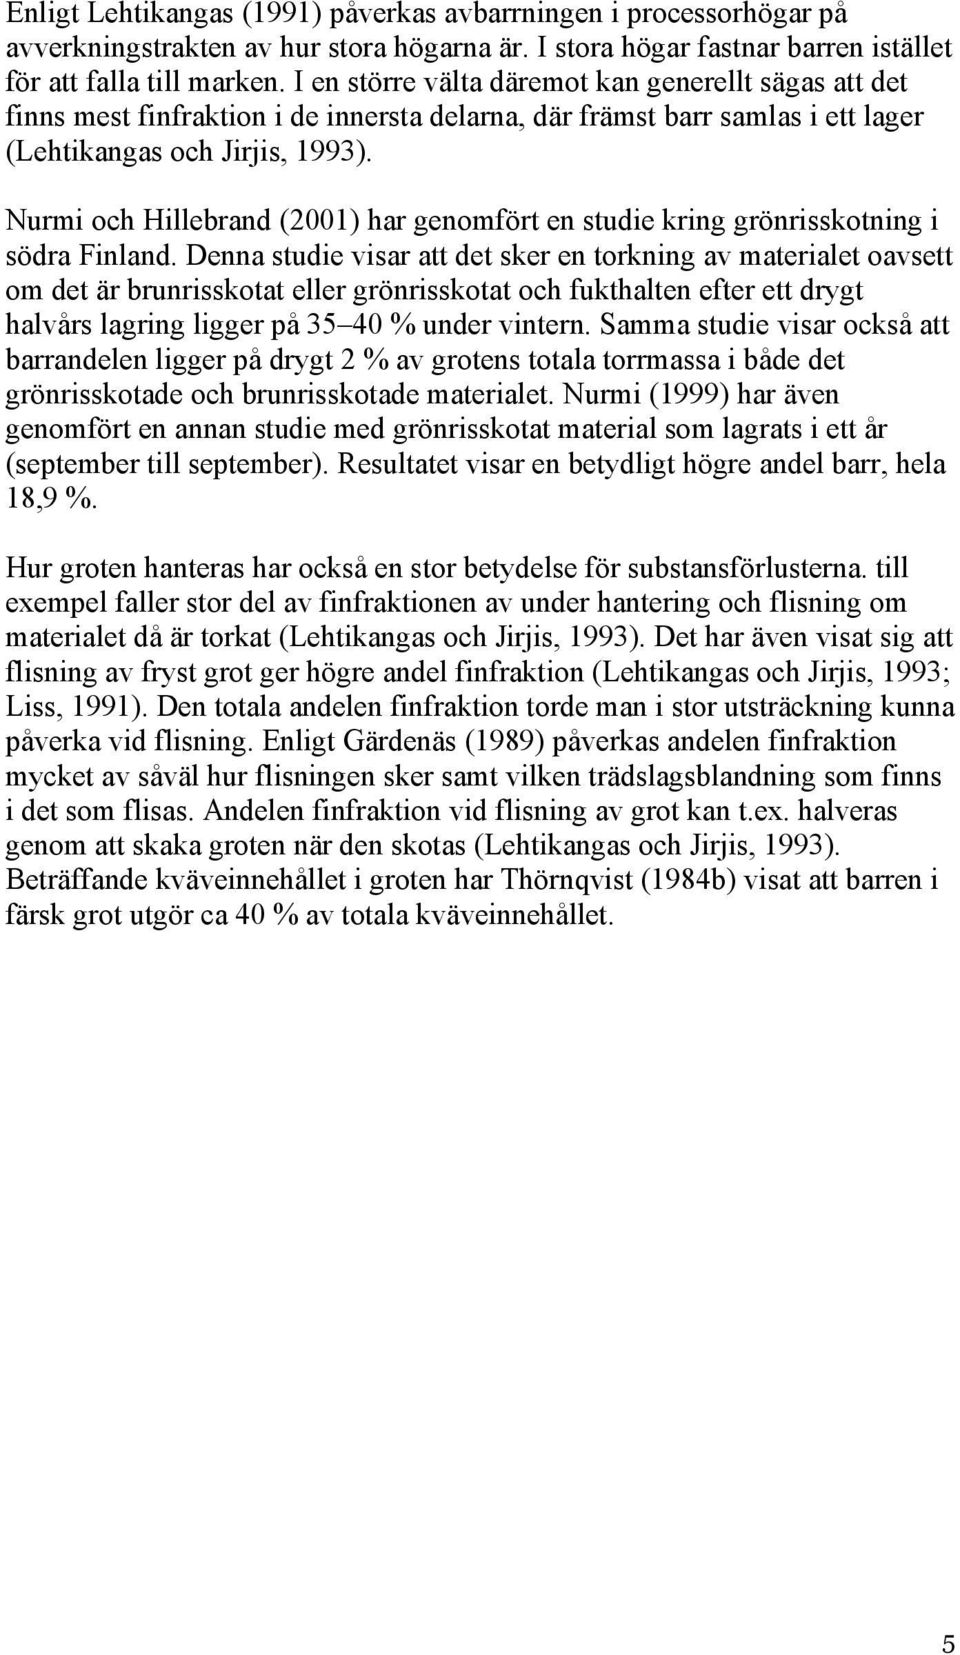 Nurmi och Hillebrand (2001) har genomfört en studie kring grönrisskotning i södra Finland.